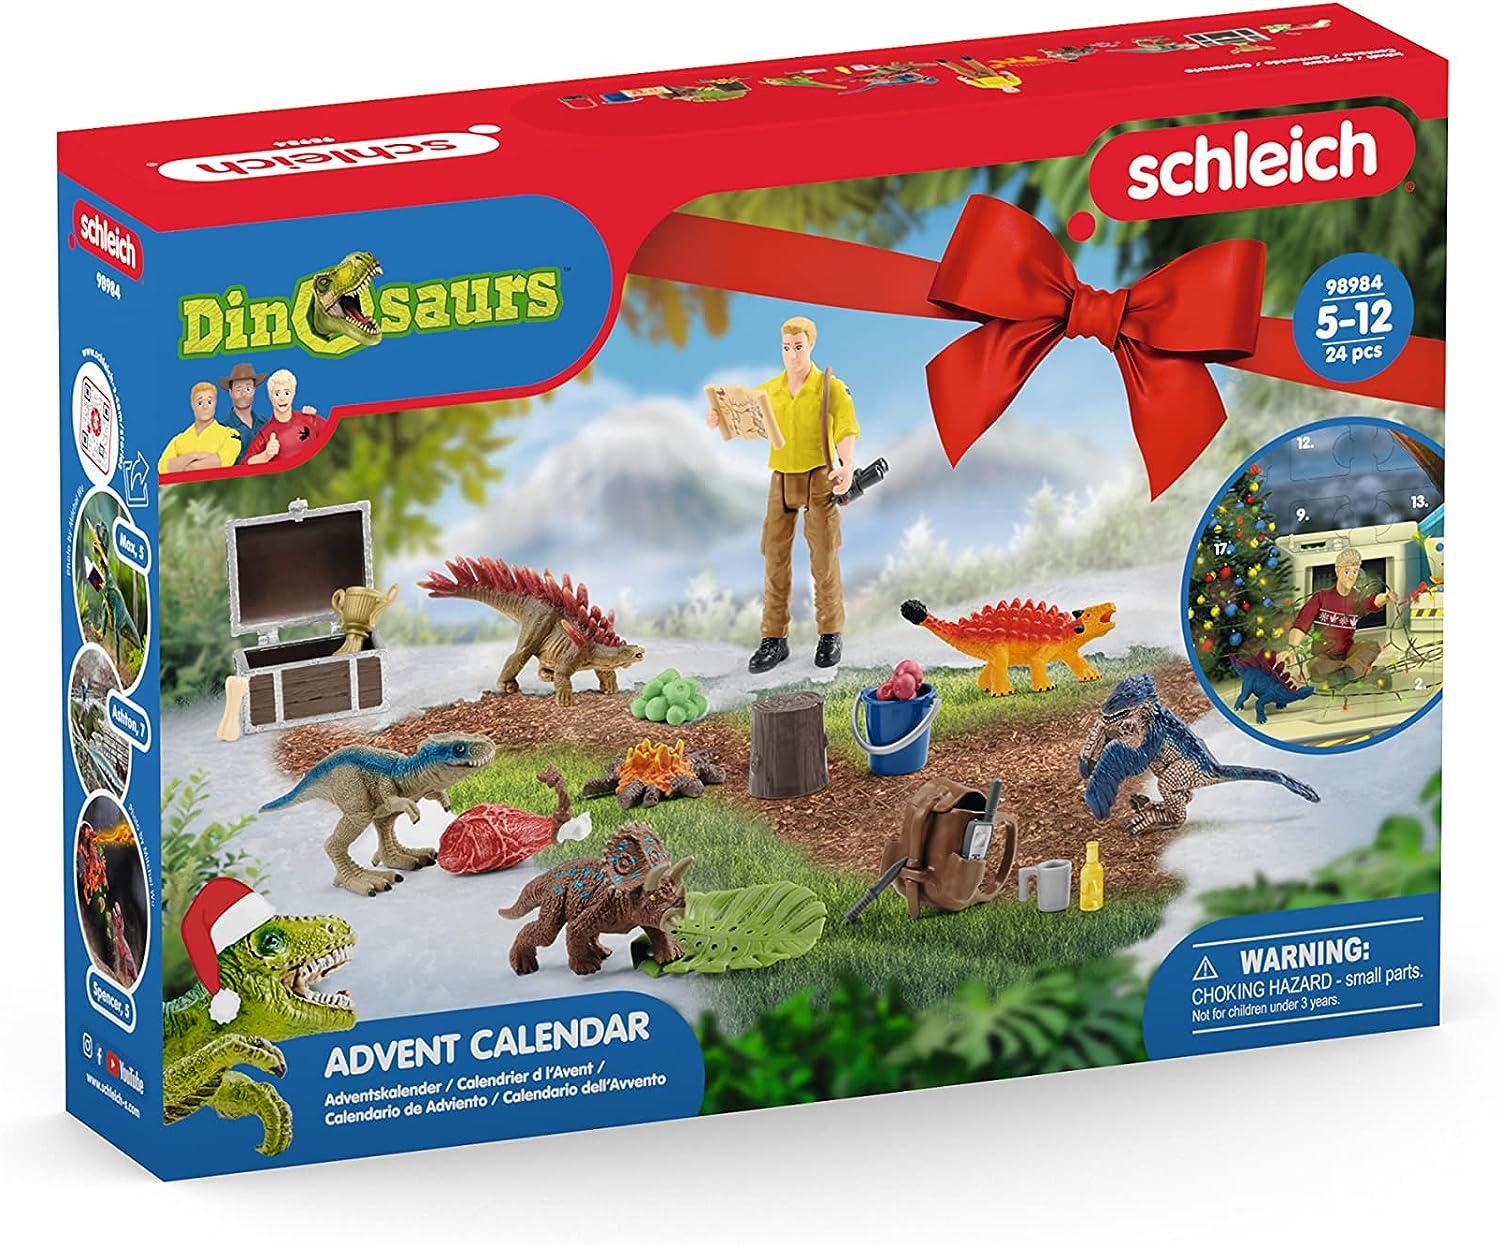 Schleich Dinosaurs 98984 - Adventskalender